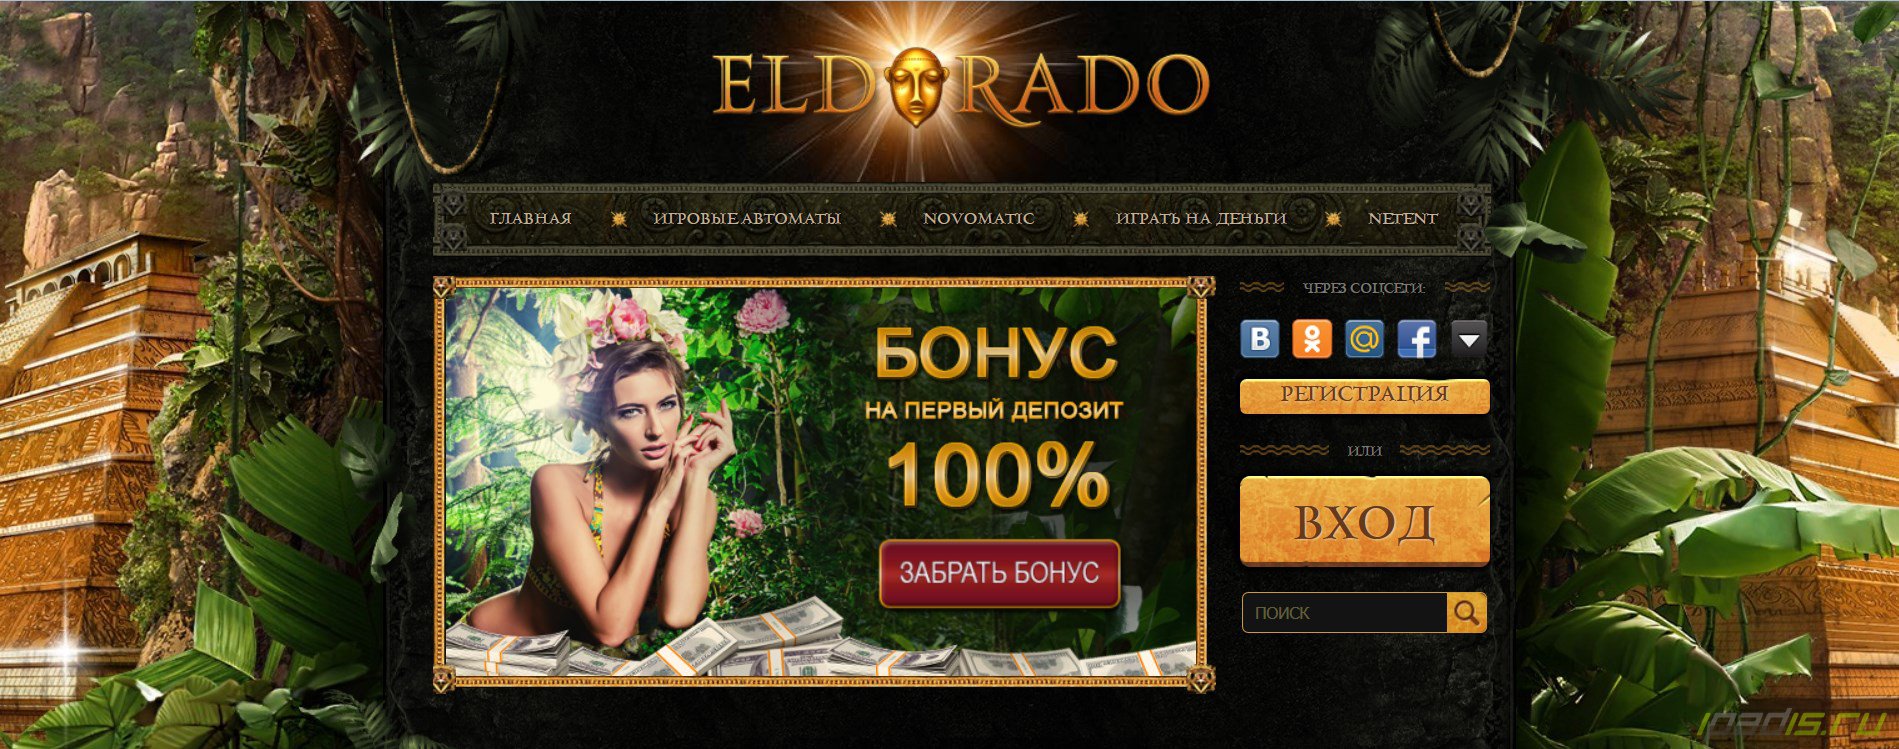 Официальный сайт eldorado casino eldoradocasino mp xyz столото по qr коду выигрыша проверить